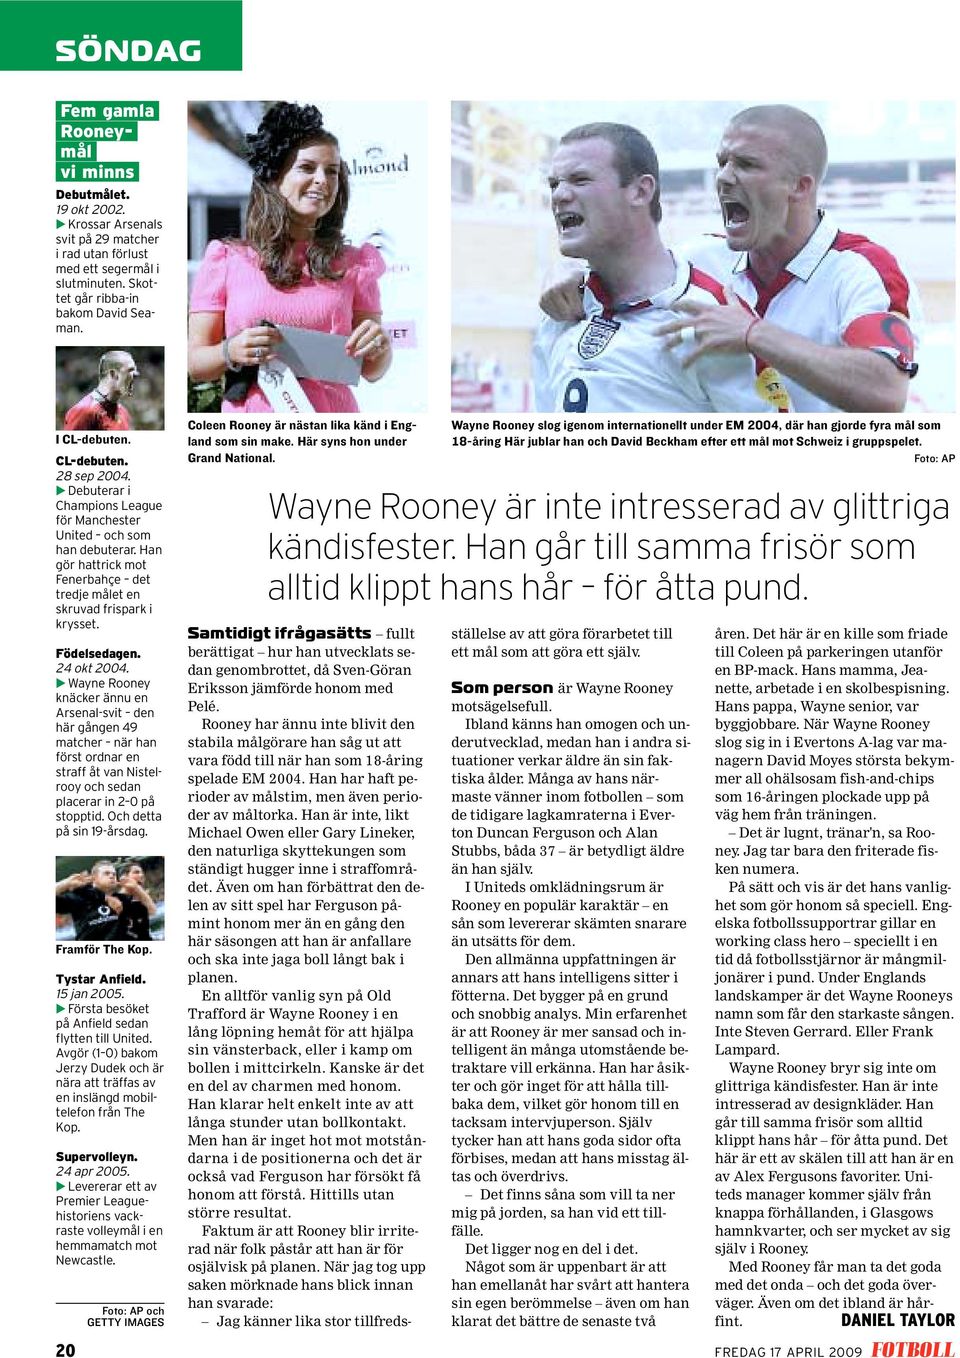 24 okt 2004. hwayne Rooney knäcker ännu en Arsenal-svit den här gången 49 matcher när han först ordnar en straff åt van Nistelrooy och sedan placerar in 2 0 på stopptid. Och detta på sin 19-årsdag.